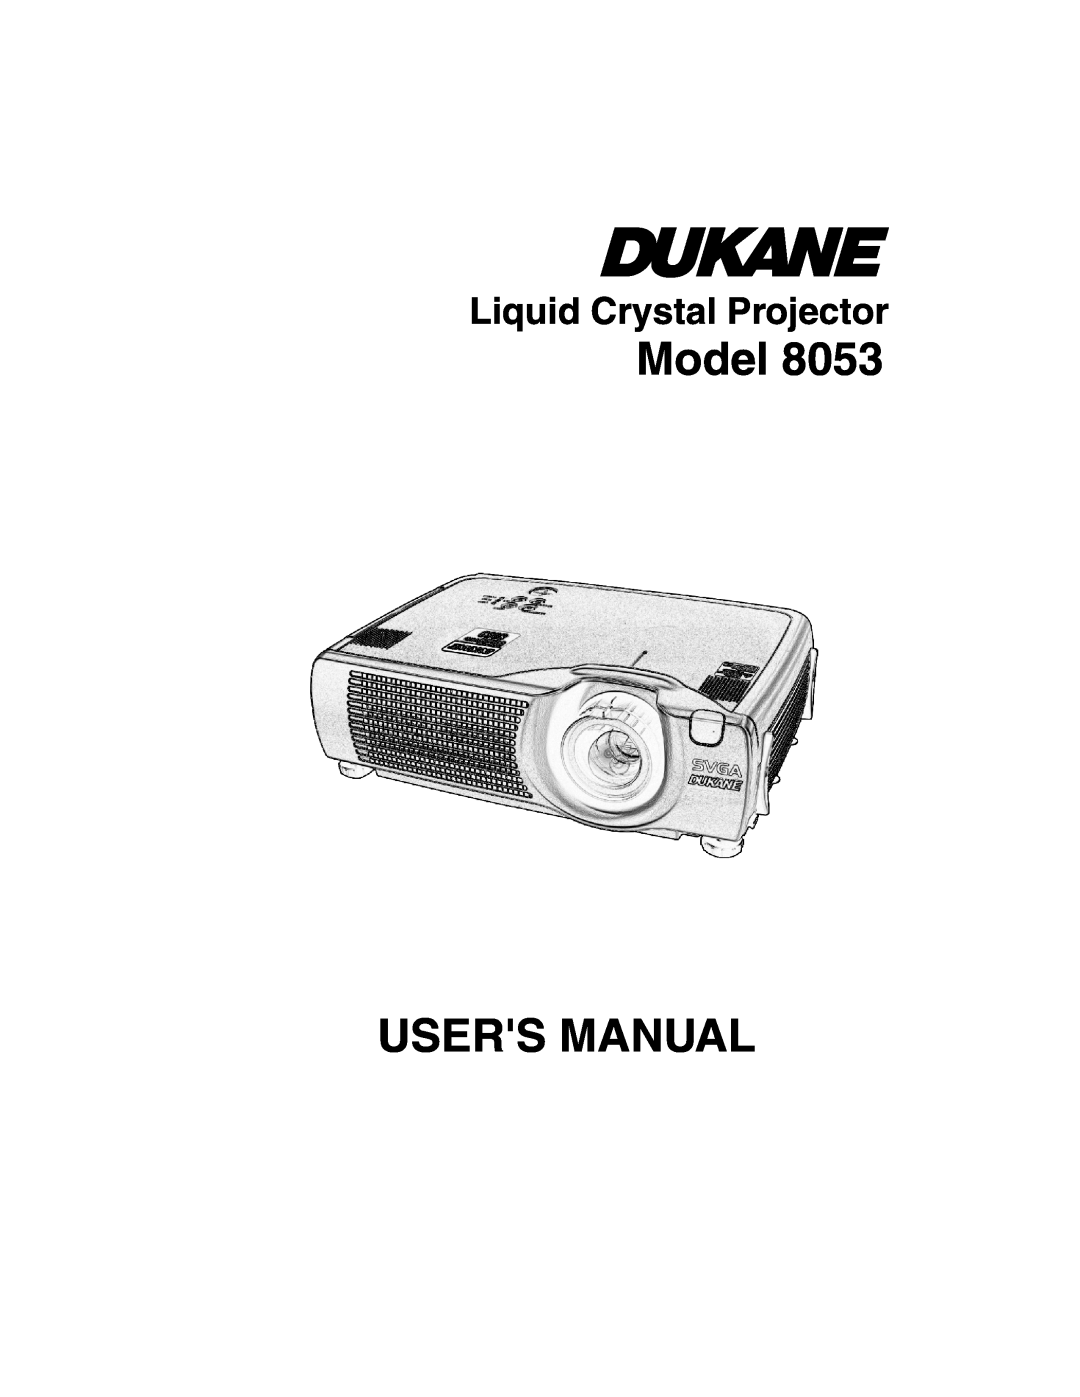 Dukane 8053 user manual Model, Users Manual, Liquid Crystal Projector 